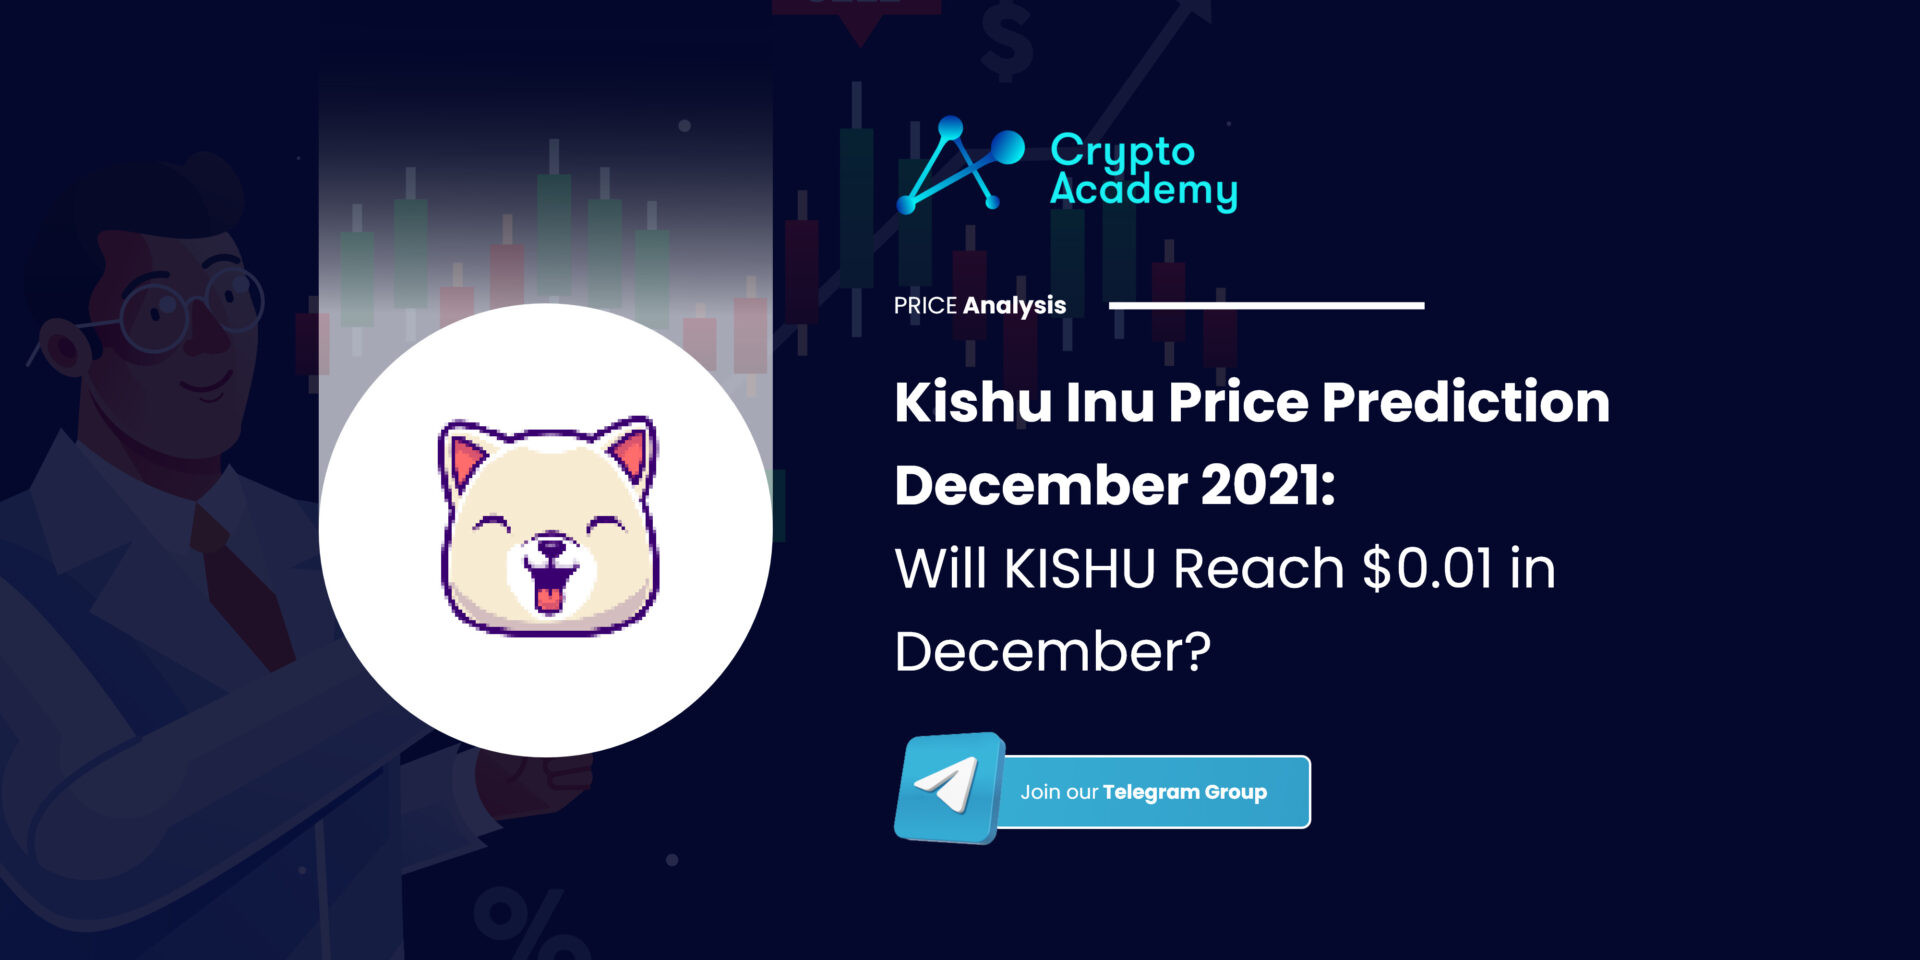 Kishu Inu Price Prediction December 2021: Will KISHU Reach $0.01 in December?